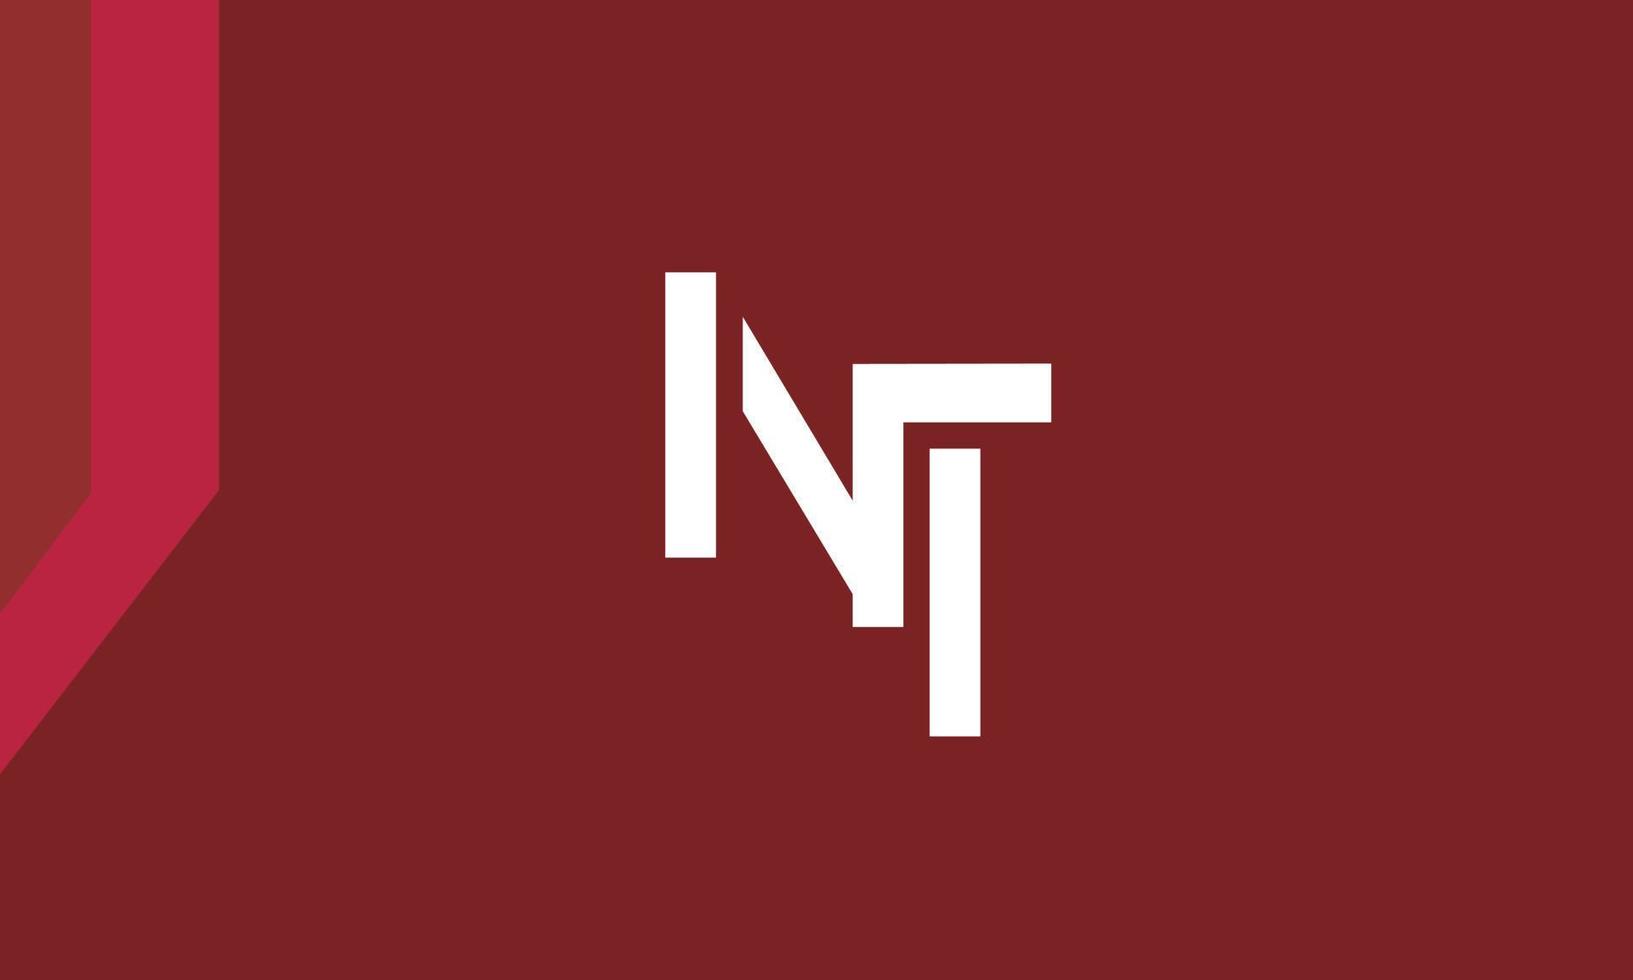 letras do alfabeto iniciais monograma logotipo nt, tn, n e t vetor